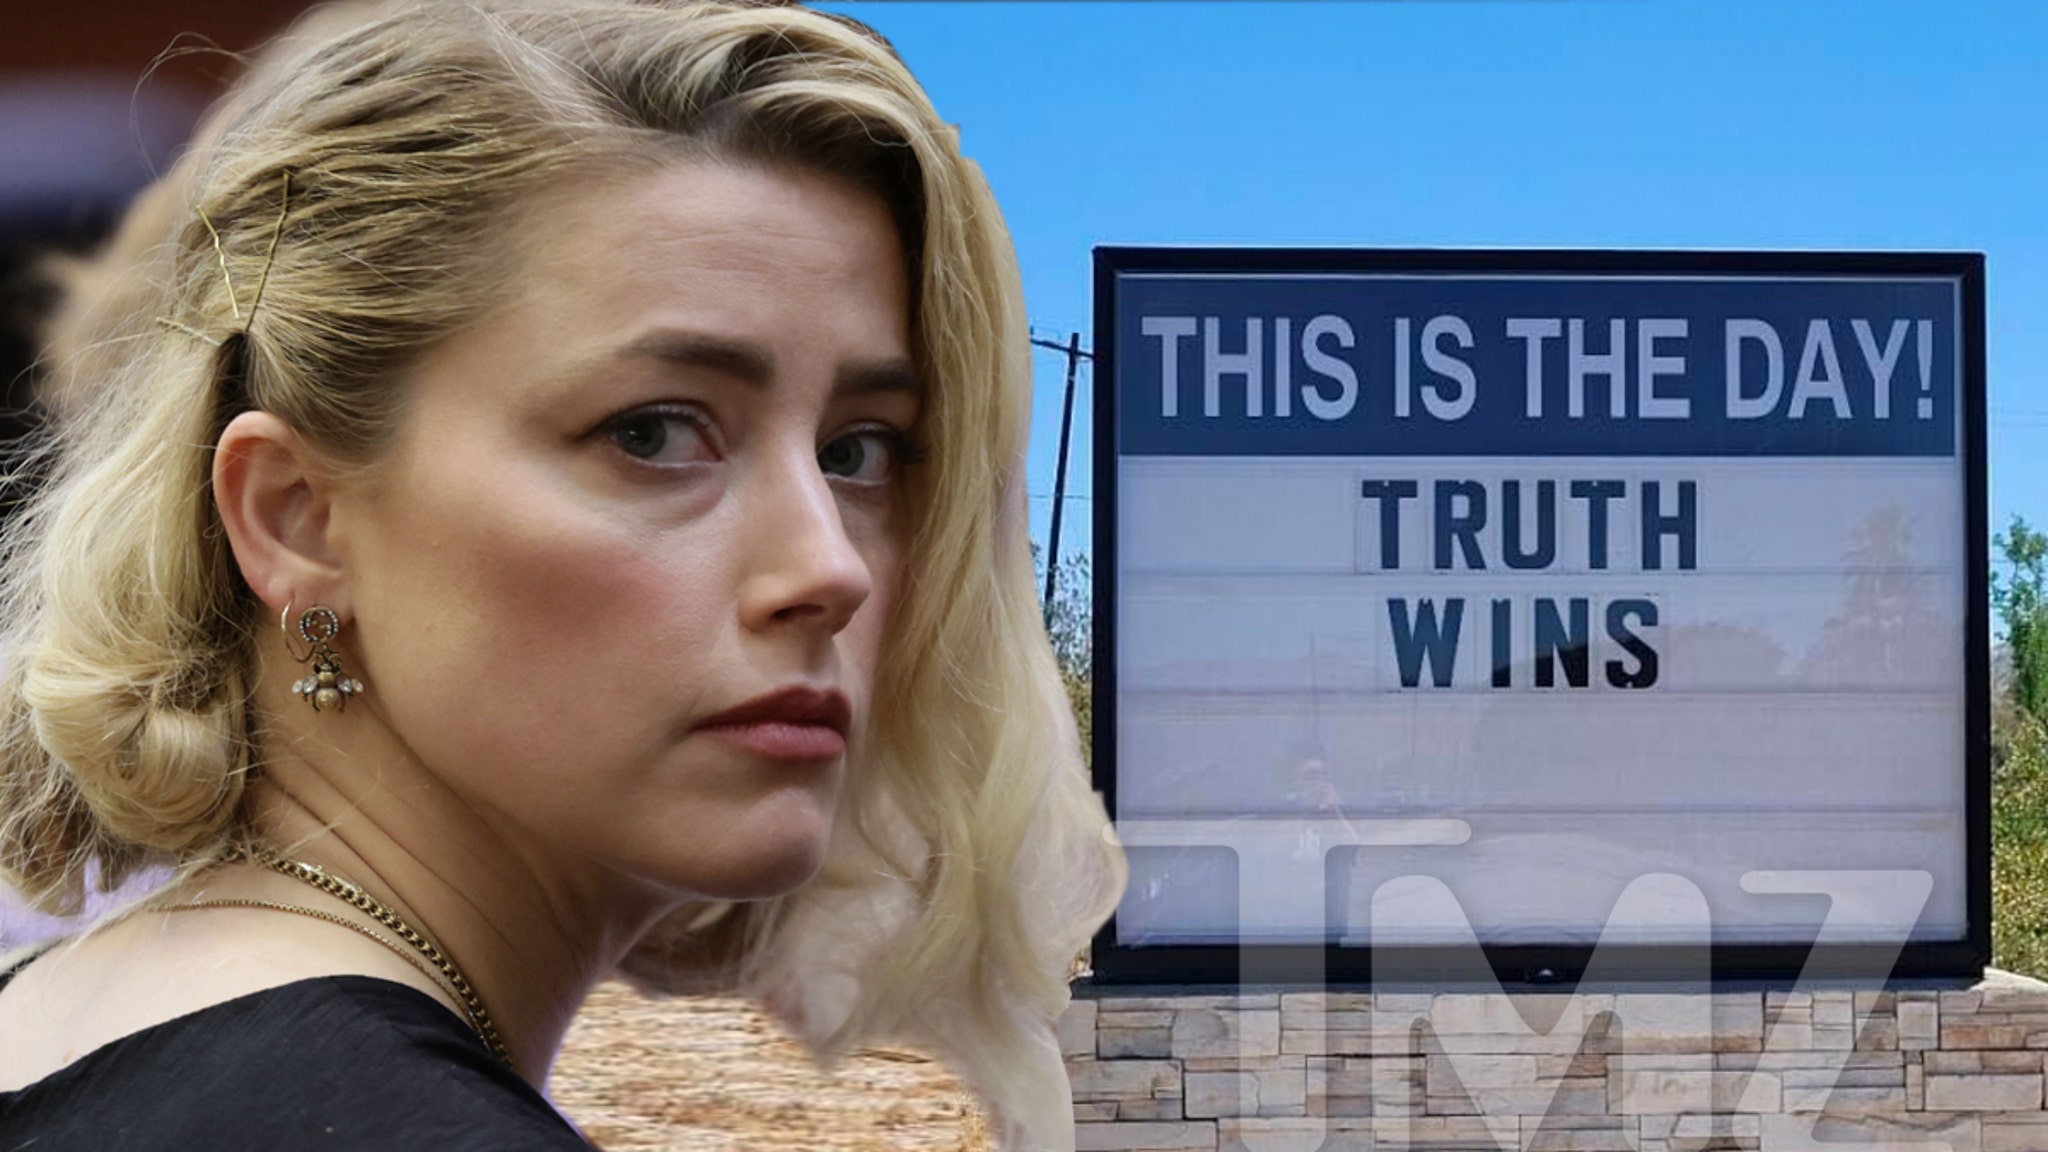 Đọc biển báo “Truth Wins” trên đường đến thị trấn chính của Amber Heard